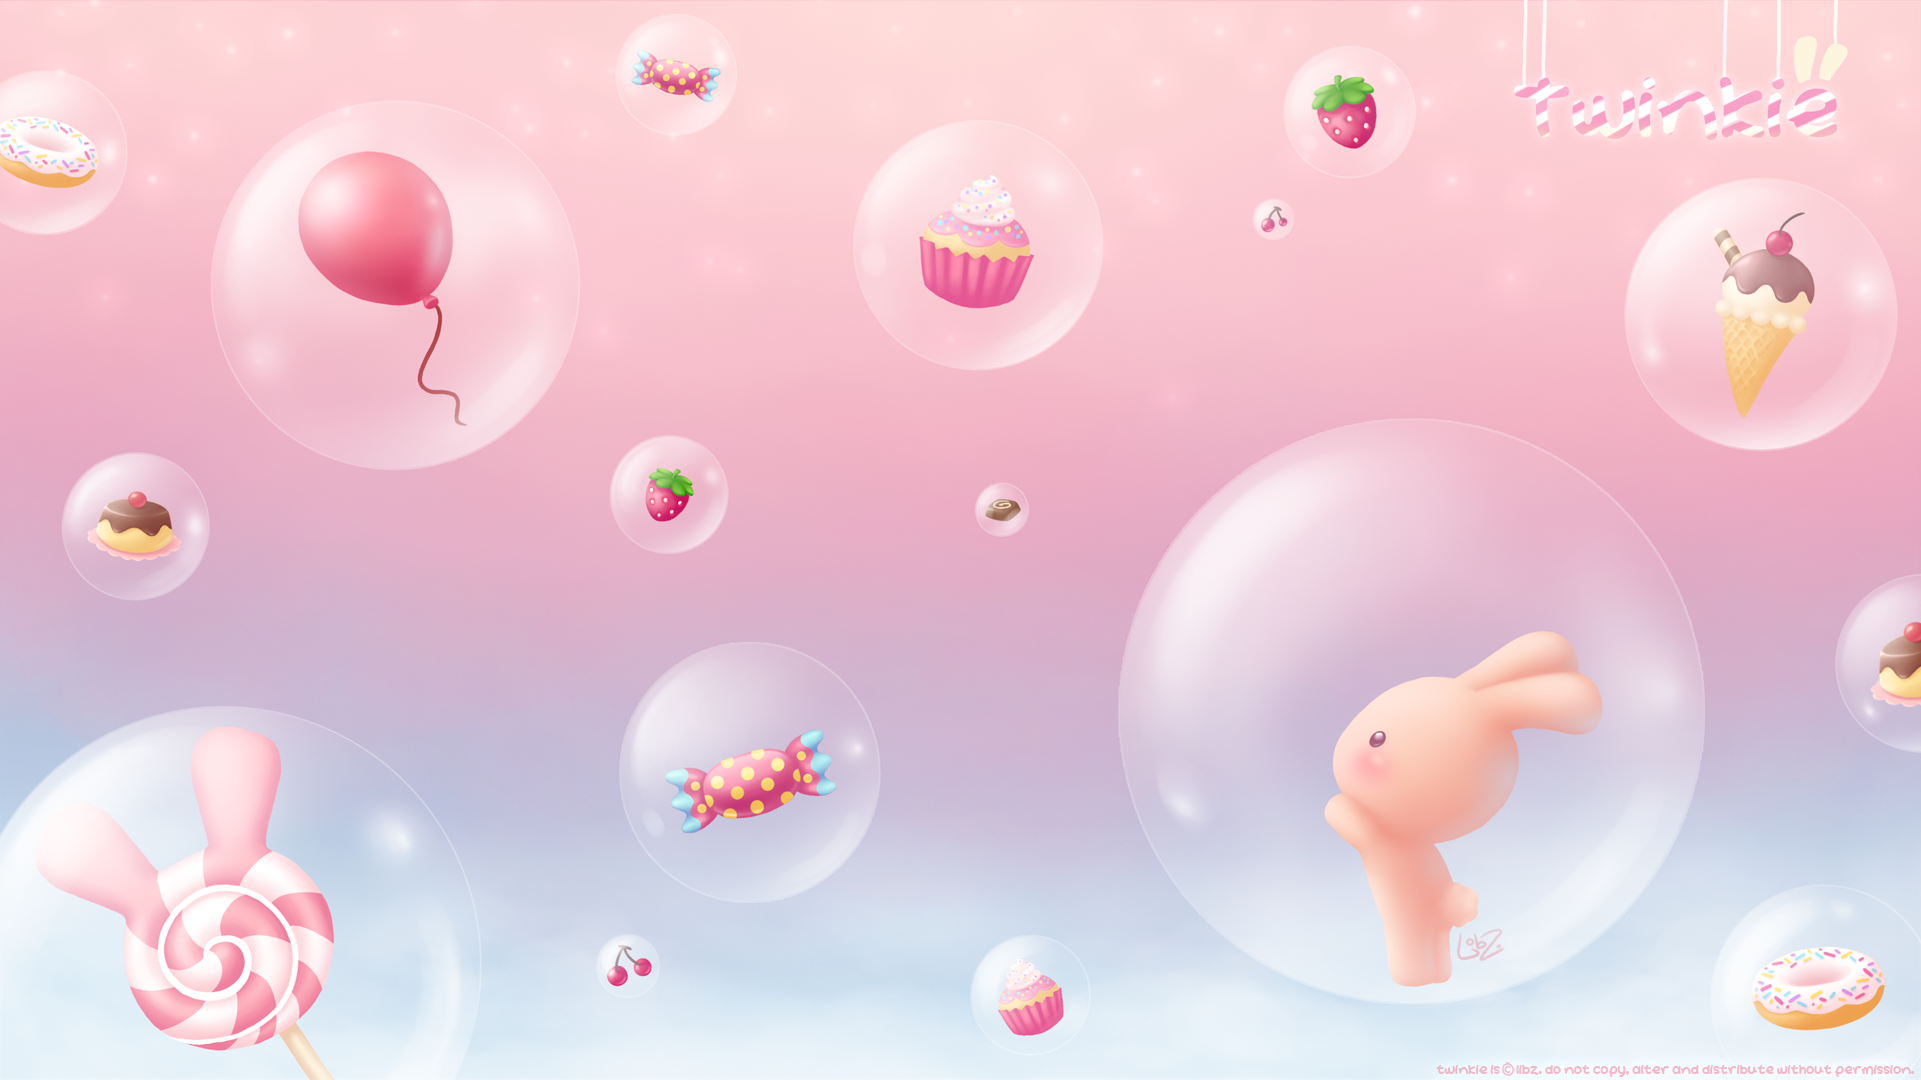 Twinkie in sweet bubble land by lilibz on DeviantArt